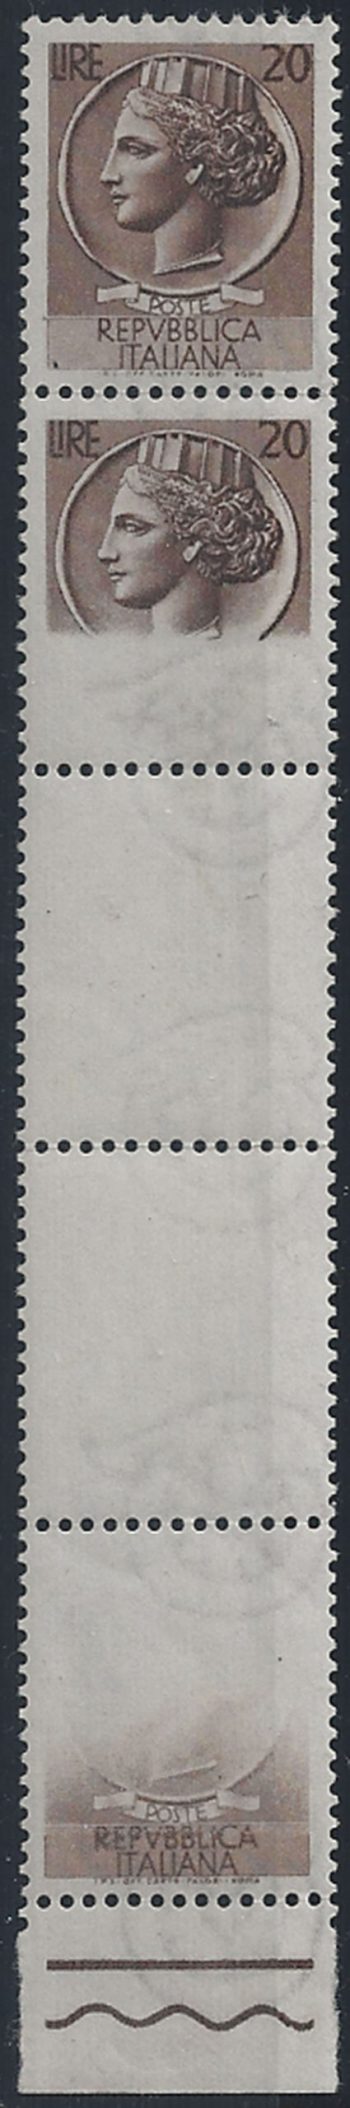 1953-54 Italia Turrita L. 20 varietà MNH Sass n. (714)